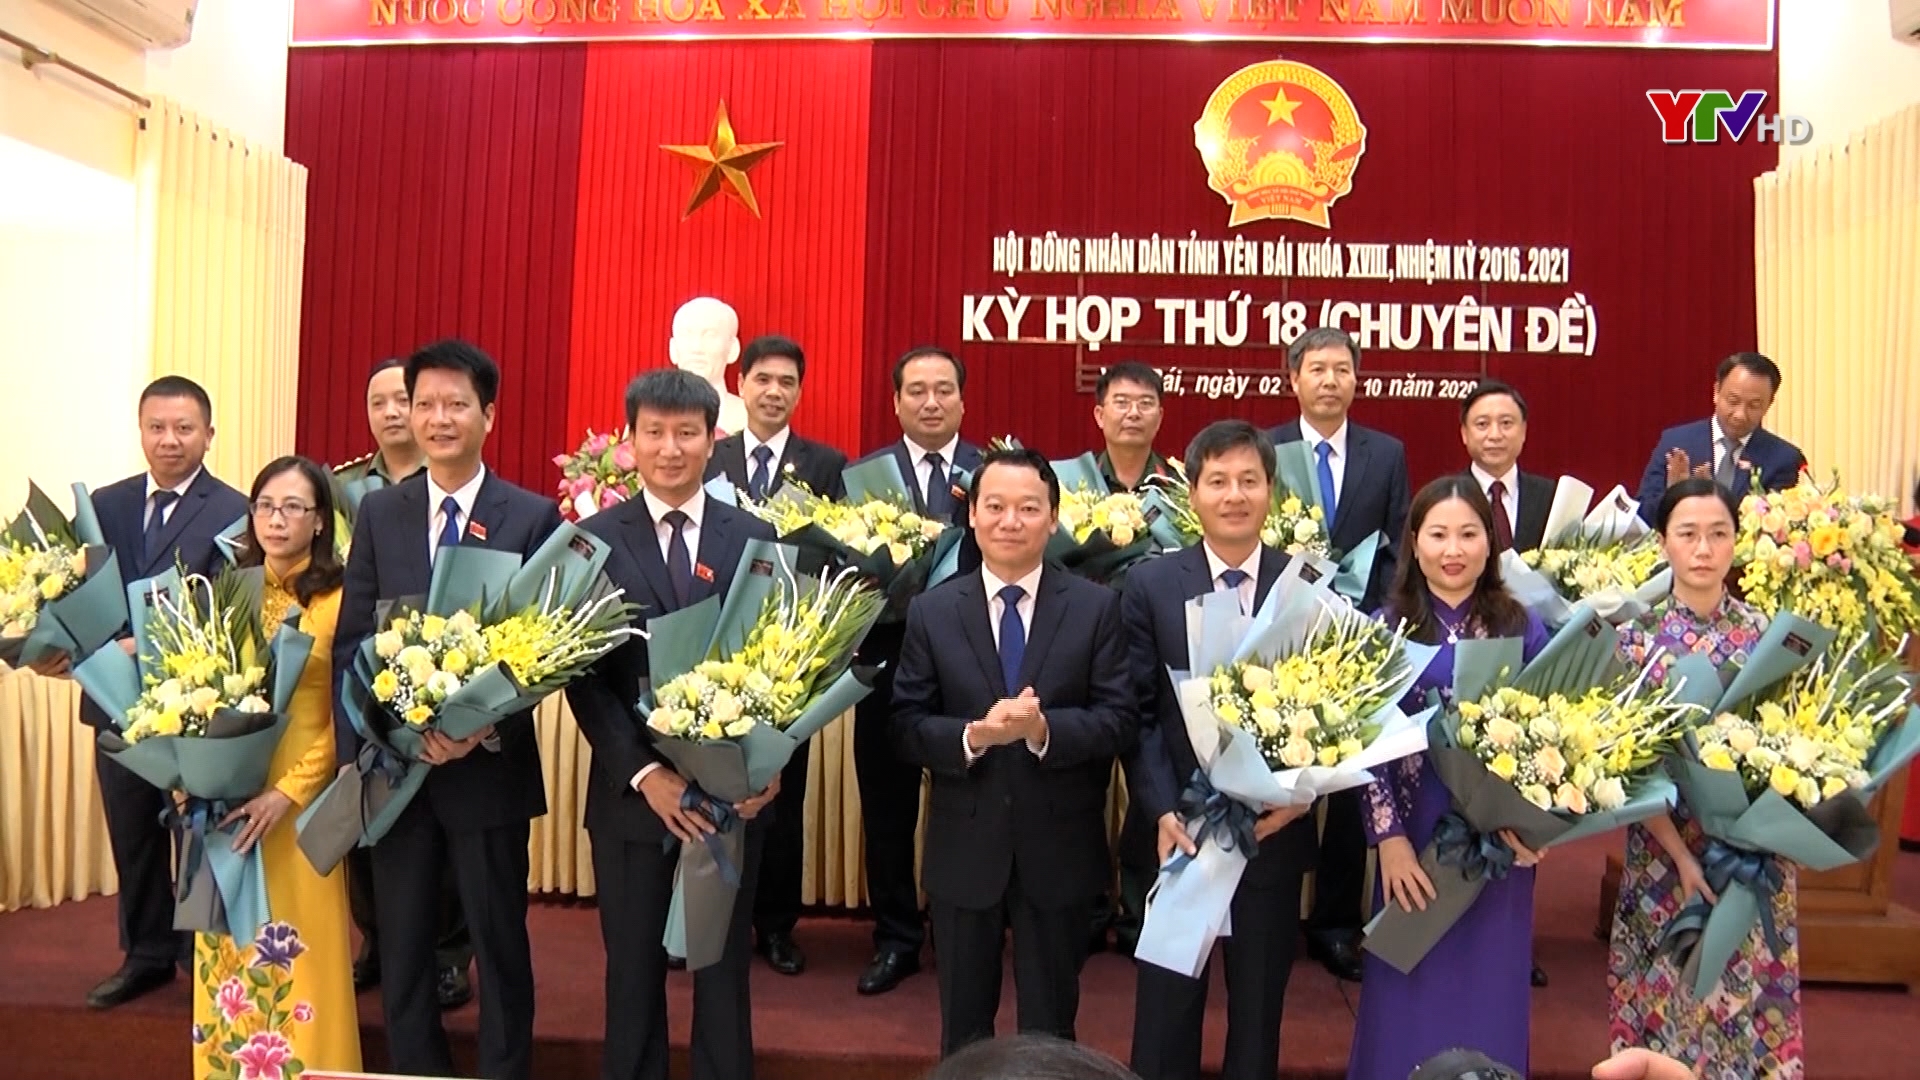 Đồng chí Trần Huy Tuấn, Phó Bí thư Tỉnh ủy được bầu giữ chức Chủ tịch UBND tỉnh Yên Bái nhiệm kỳ 2016 – 2021